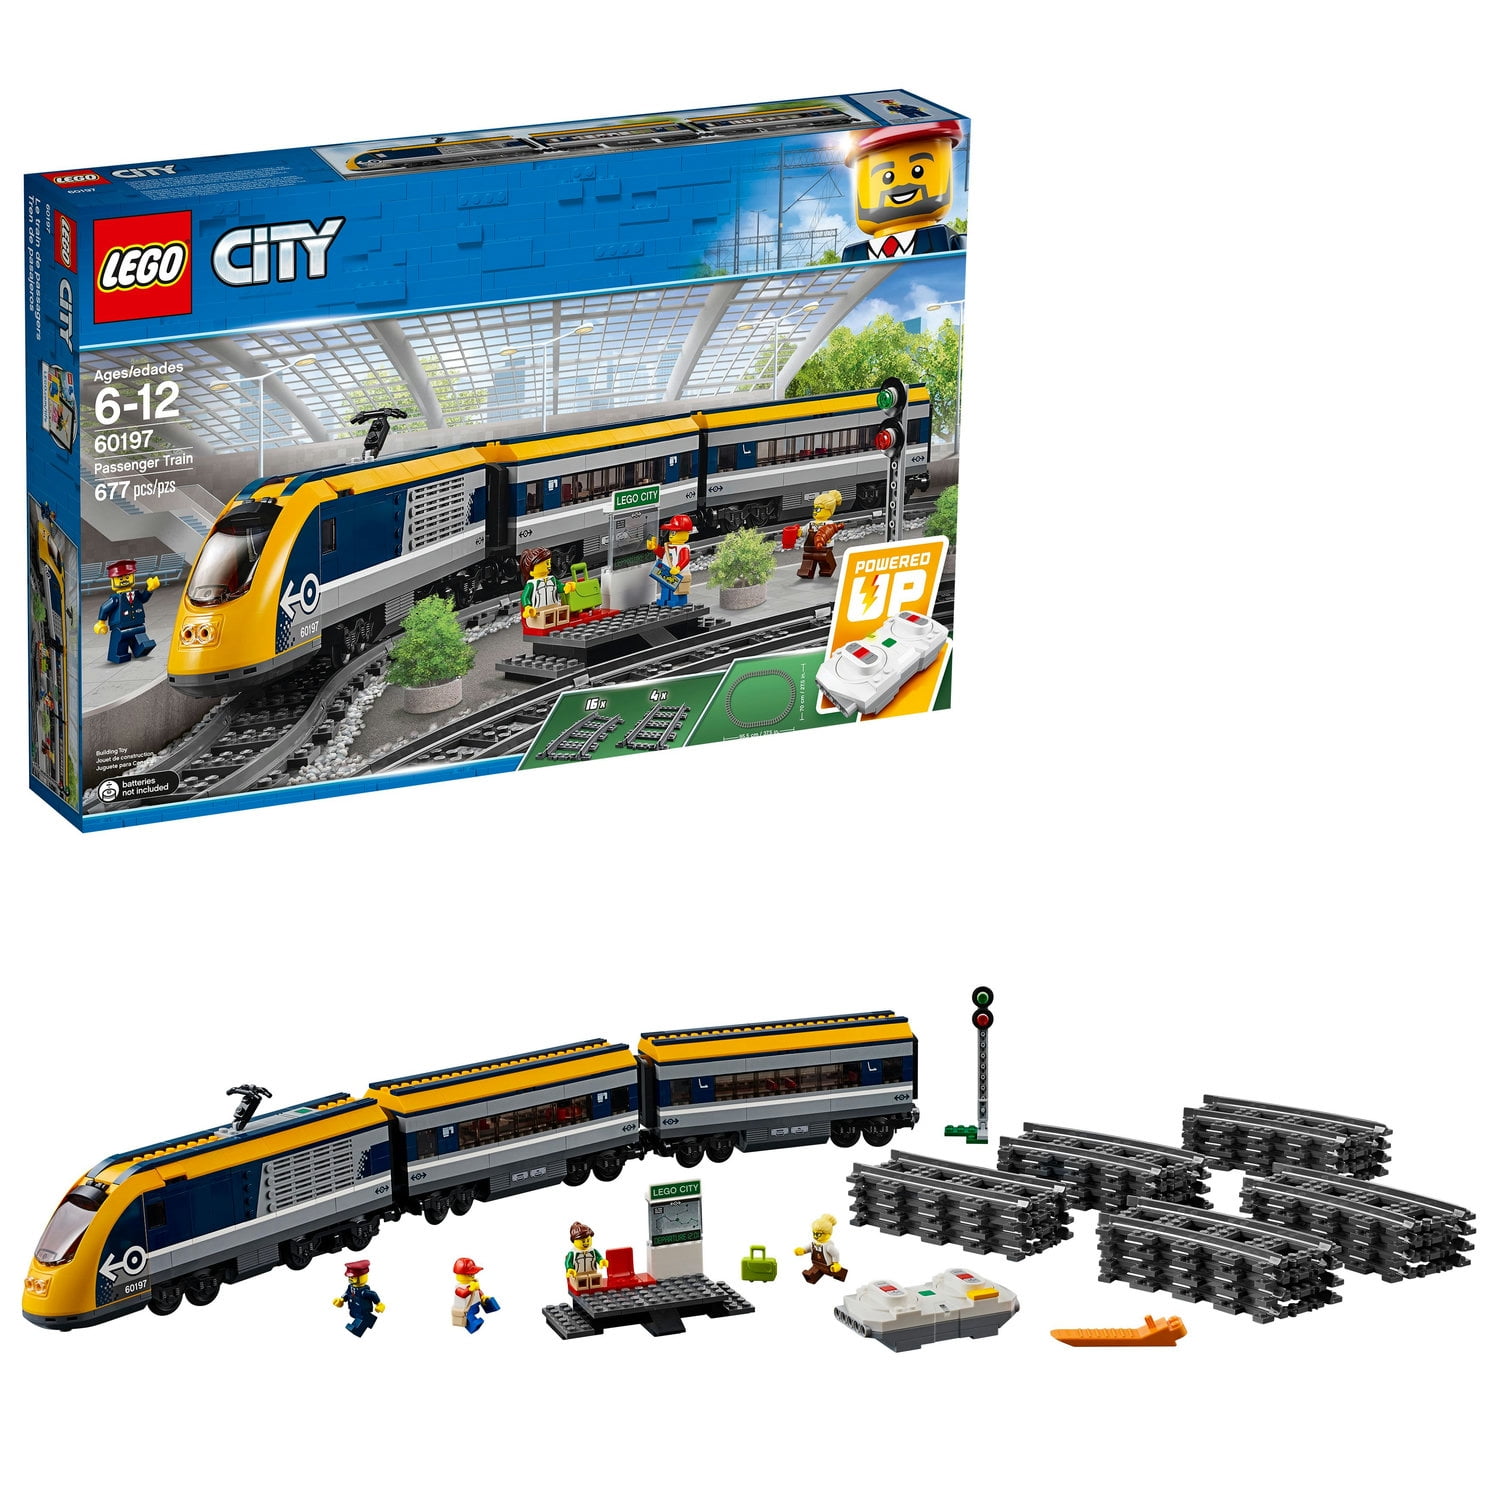 LEGO City Treno Motore 88002 Power Functions 7938/7939/60051/60052/60098/10254 